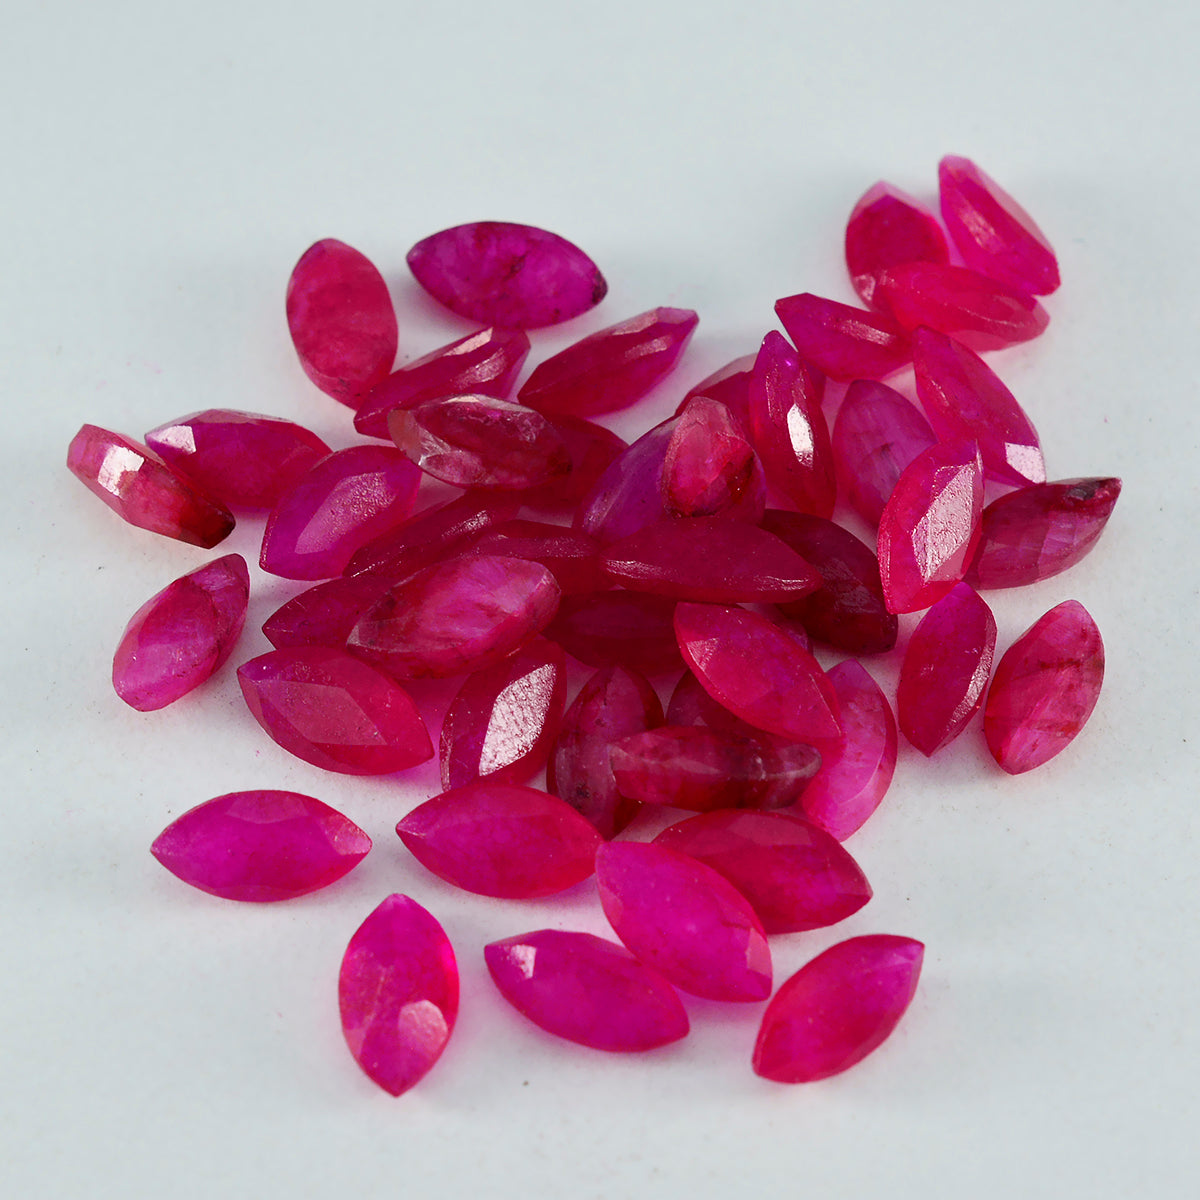 Riyogems 1pc véritable jaspe rouge à facettes 5x10mm forme marquise qualité incroyable pierre précieuse en vrac